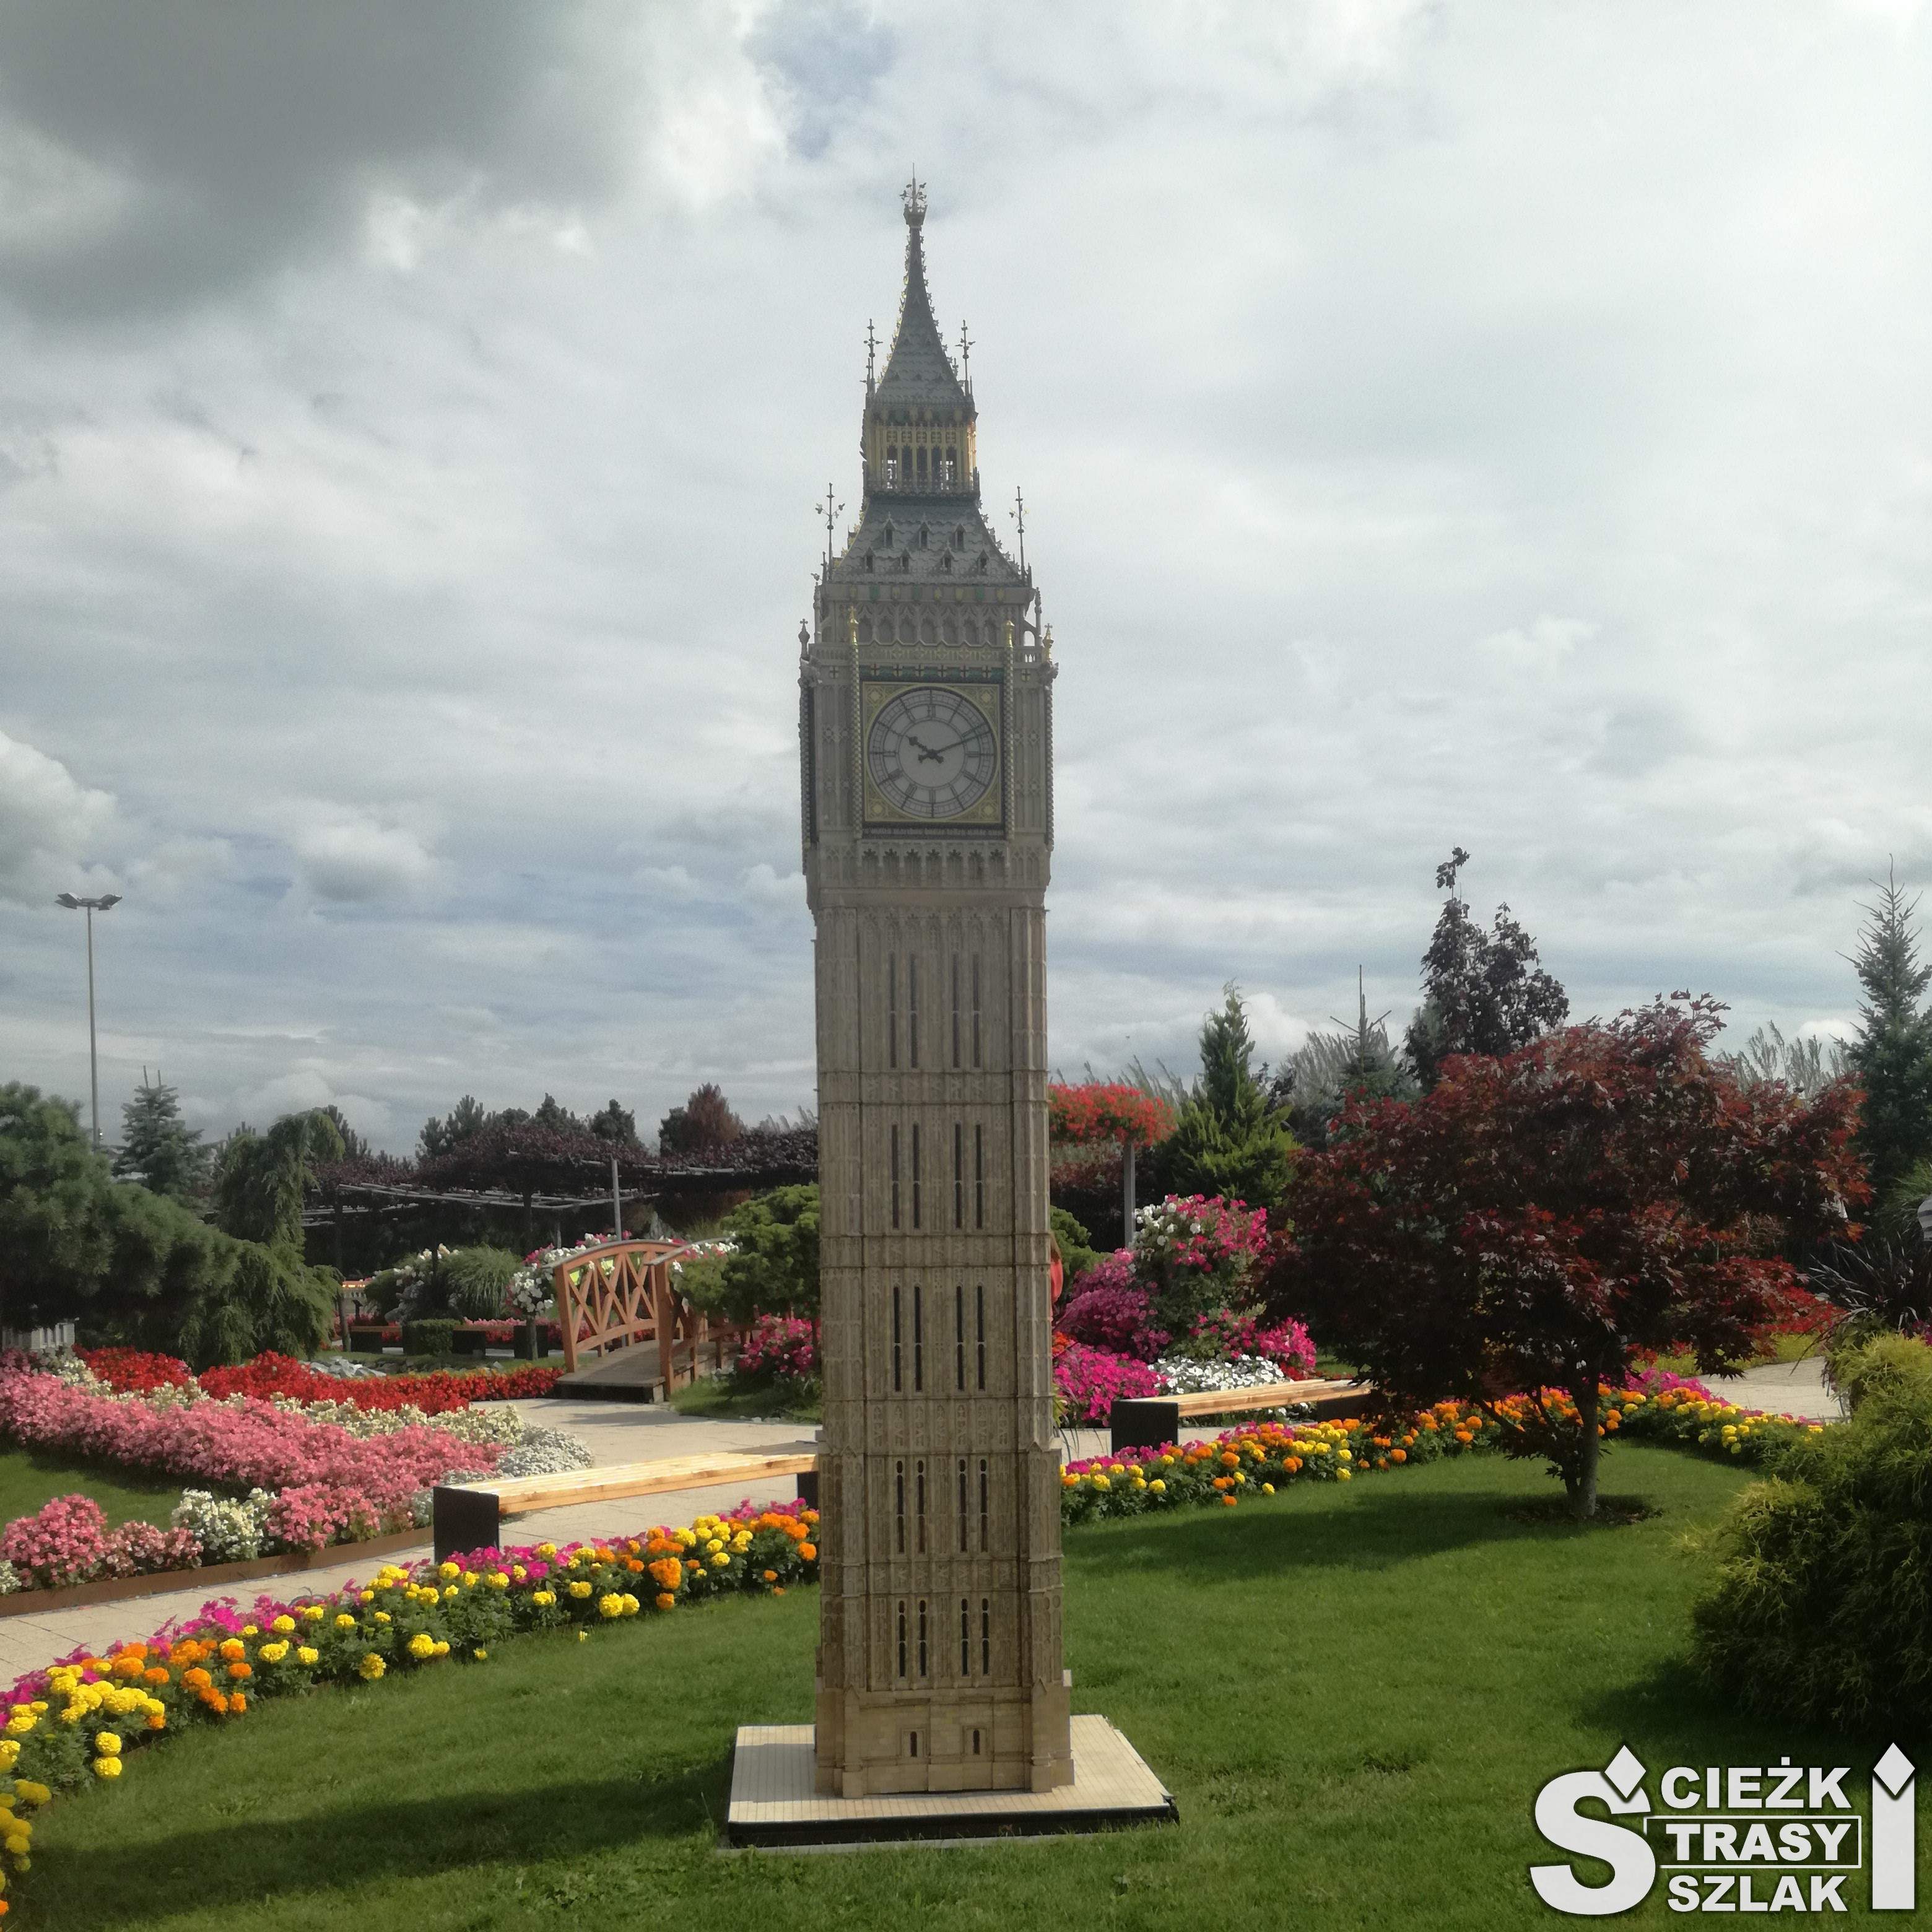 Wieża Big Ben w Parku Miniatur w Minieurolandzie w kłodzku w otoczeniu kolorowych kwiatów i krzewów